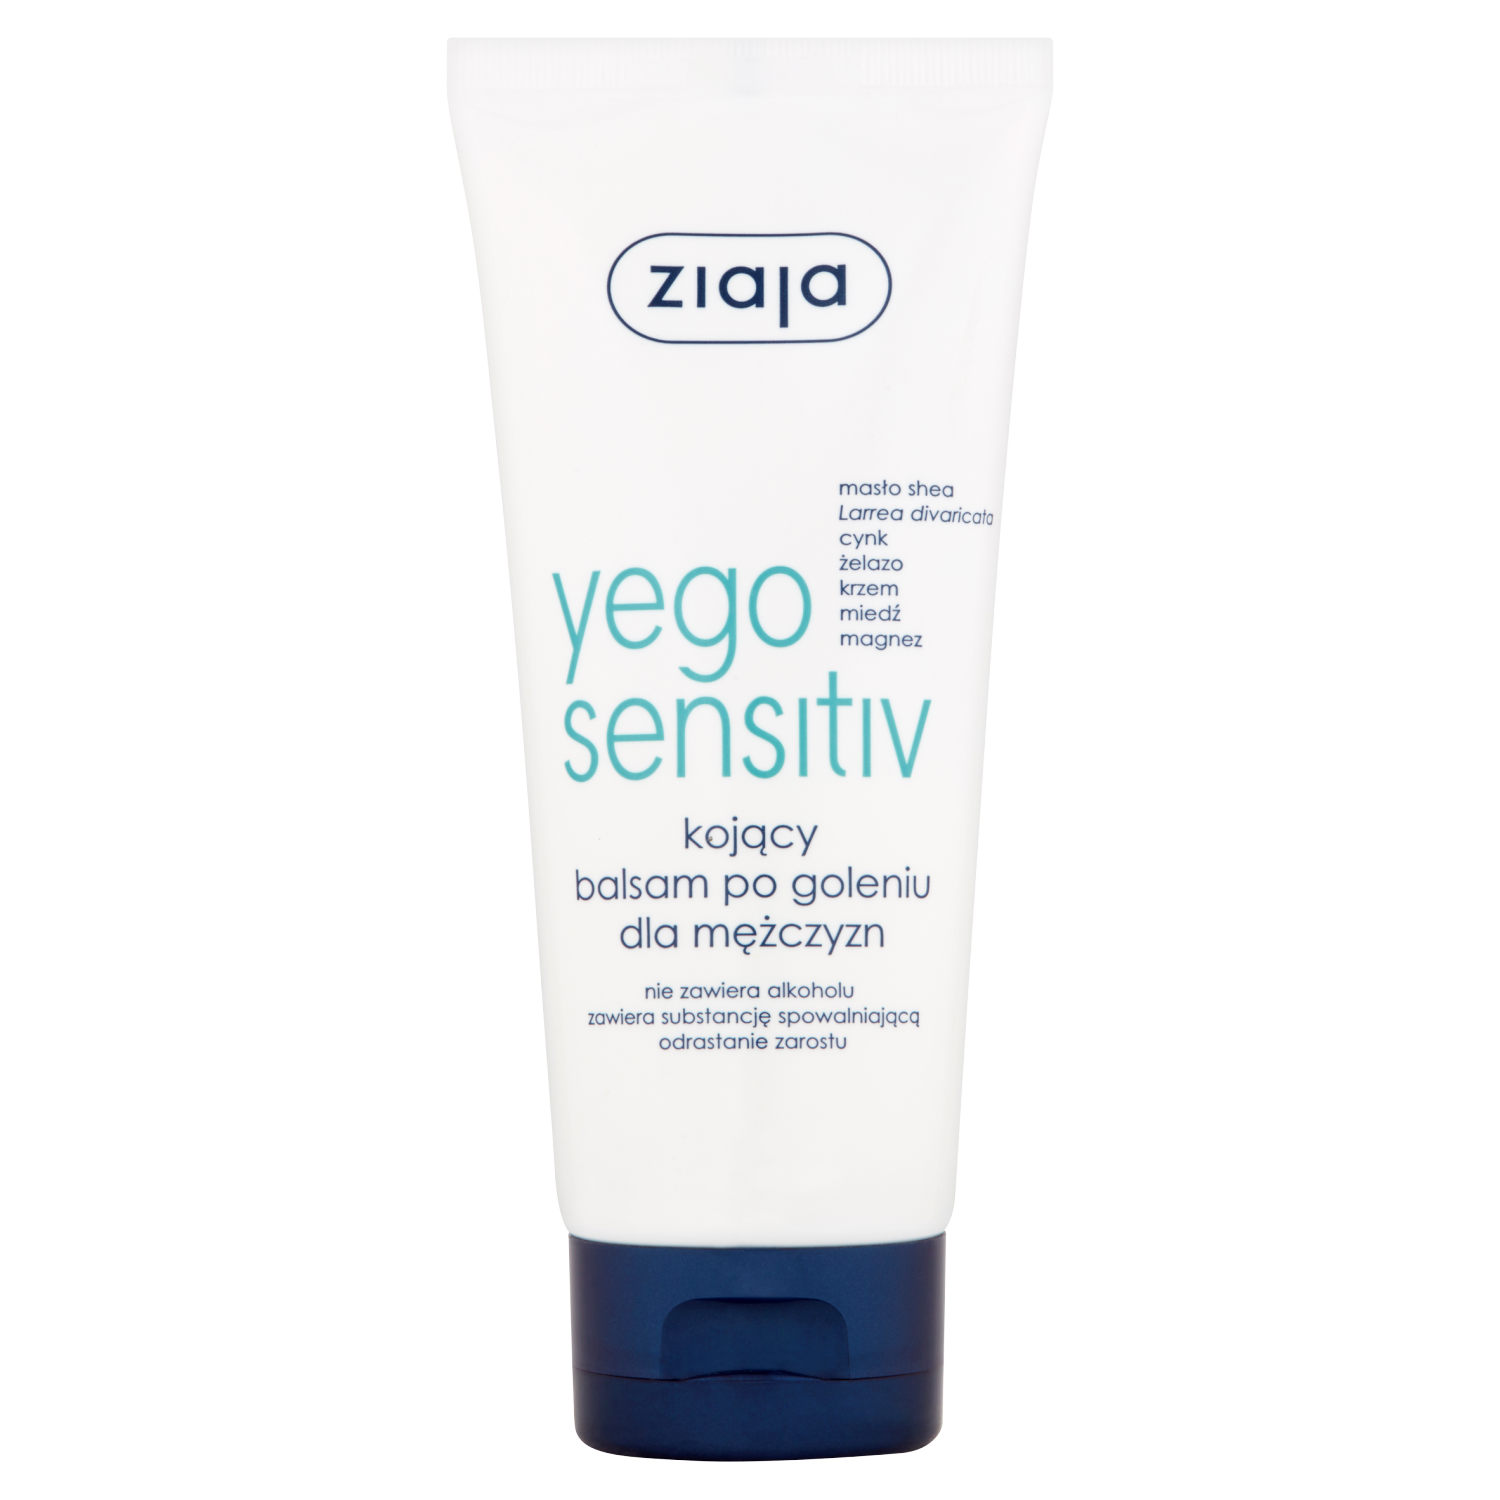 Ziaja Yego Sensitiv kojący balsam po goleniu do twarzy dla mężczyzn, 75 ml  | hebe.pl